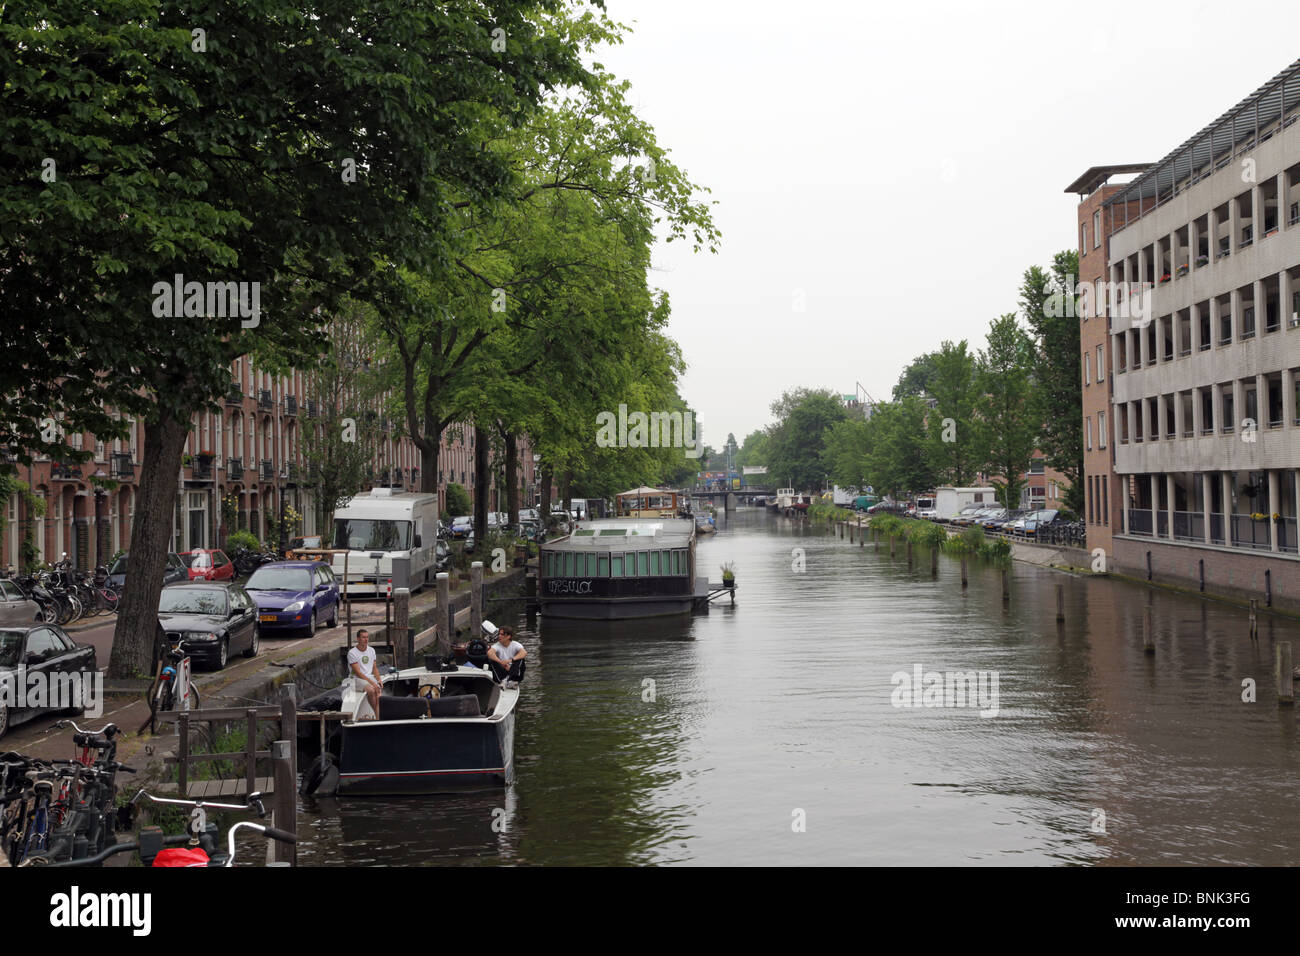 Blick auf die Gebäude am Canalside-Ufer der Jacob Catskade, Amsterdam Stockfoto